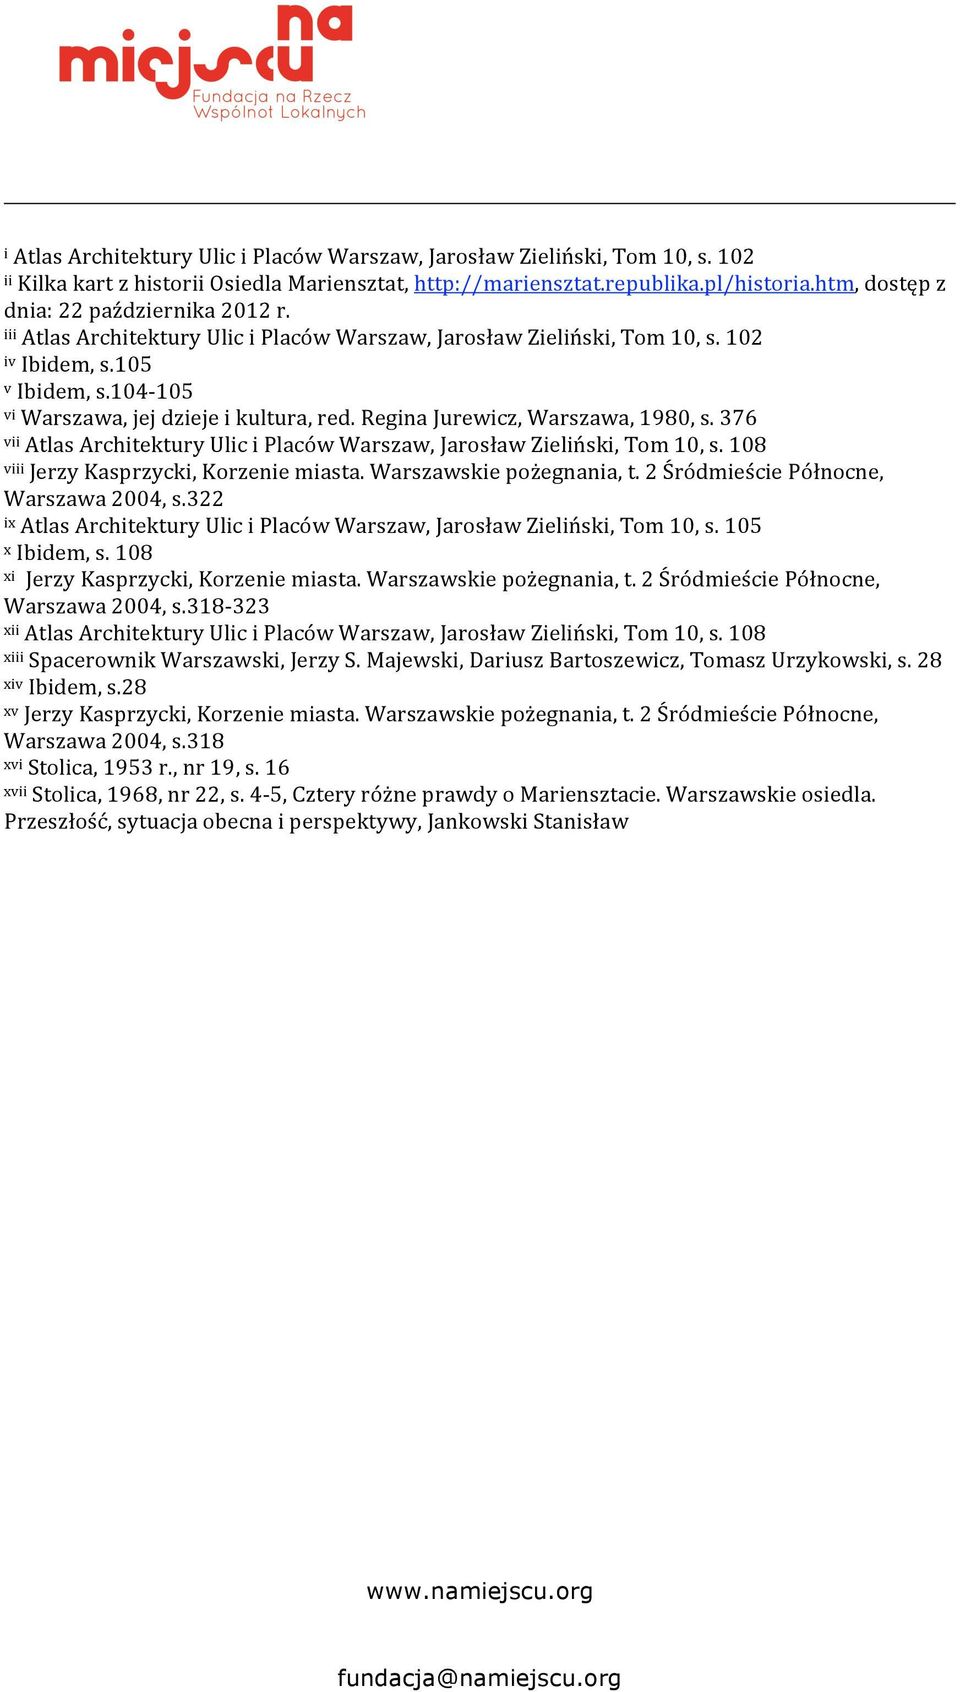 376 viiatlasarchitekturyuliciplacówwarszaw,jarosławzieliński,tom10,s.108 viiijerzykasprzycki,korzeniemiasta.warszawskiepożegnania,t.2śródmieściepółnocne, Warszawa2004,s.